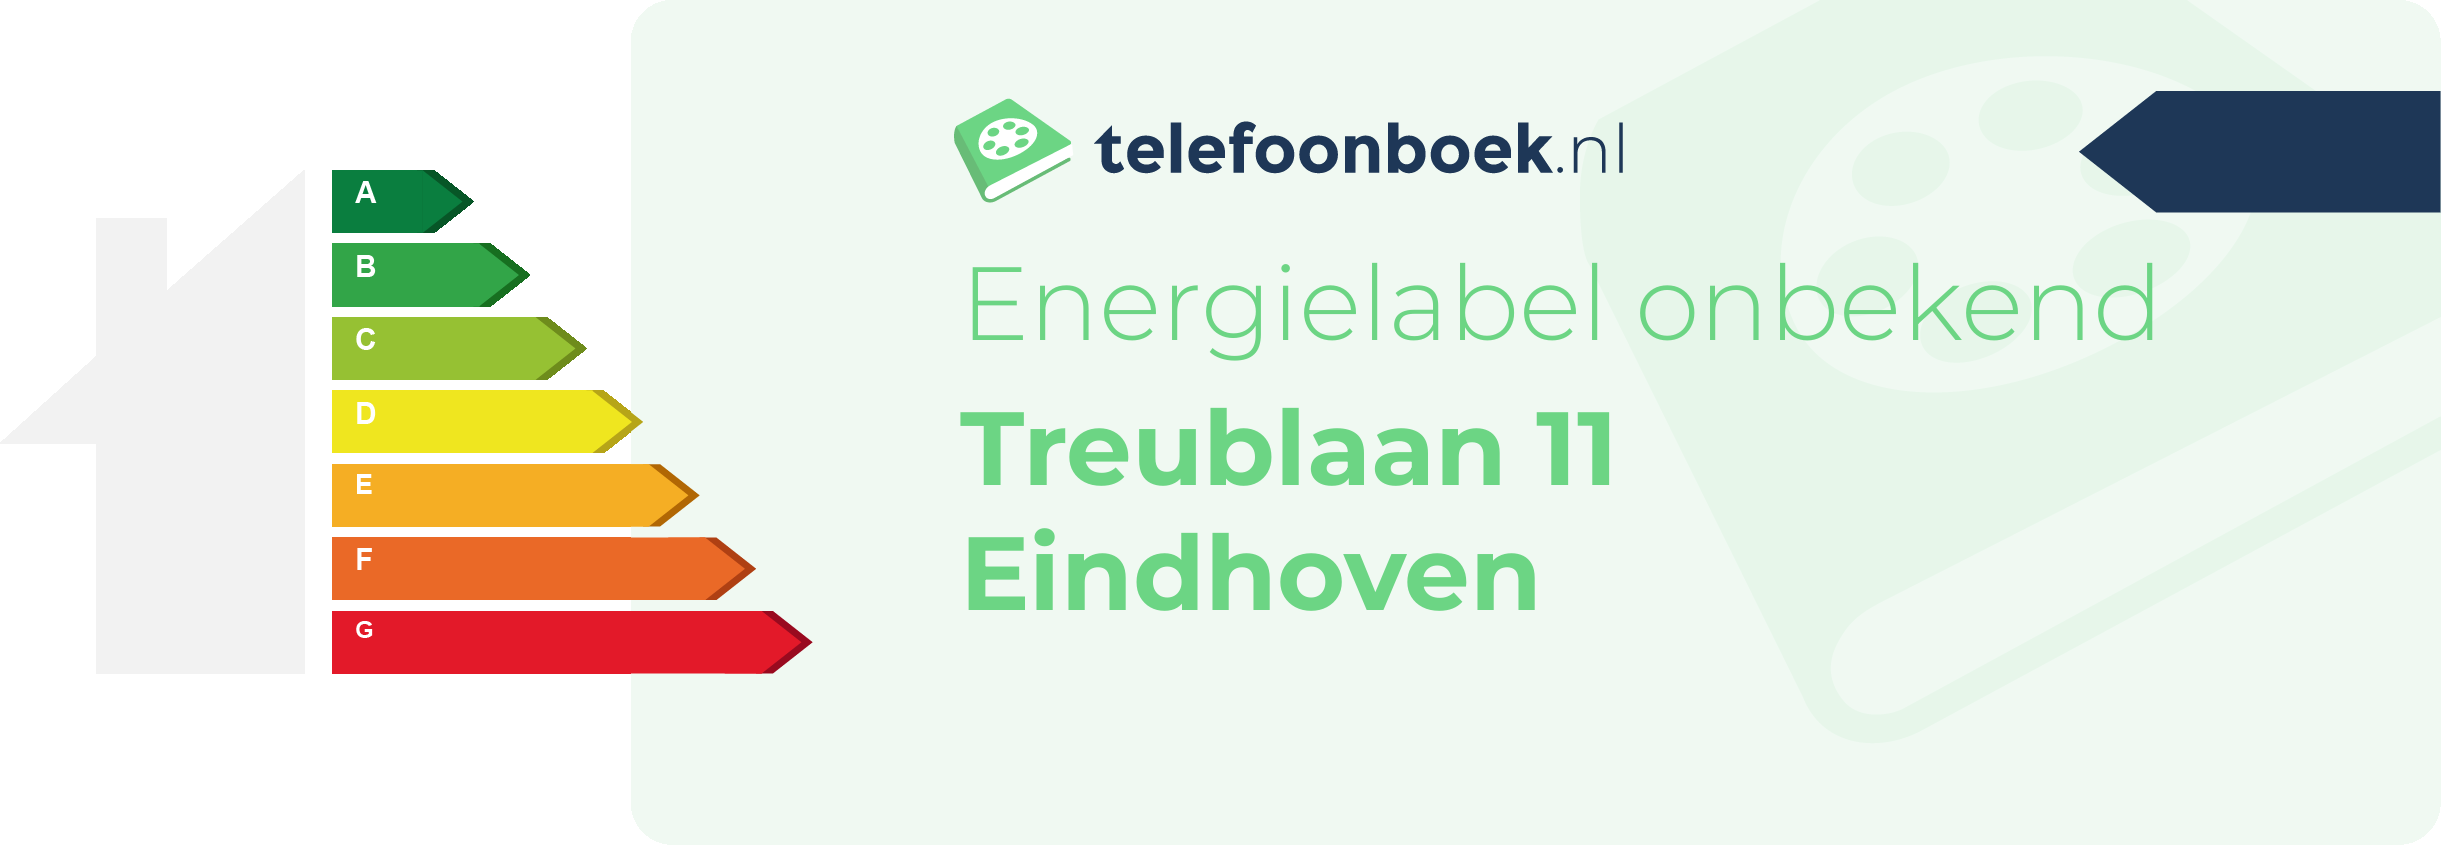 Energielabel Treublaan 11 Eindhoven